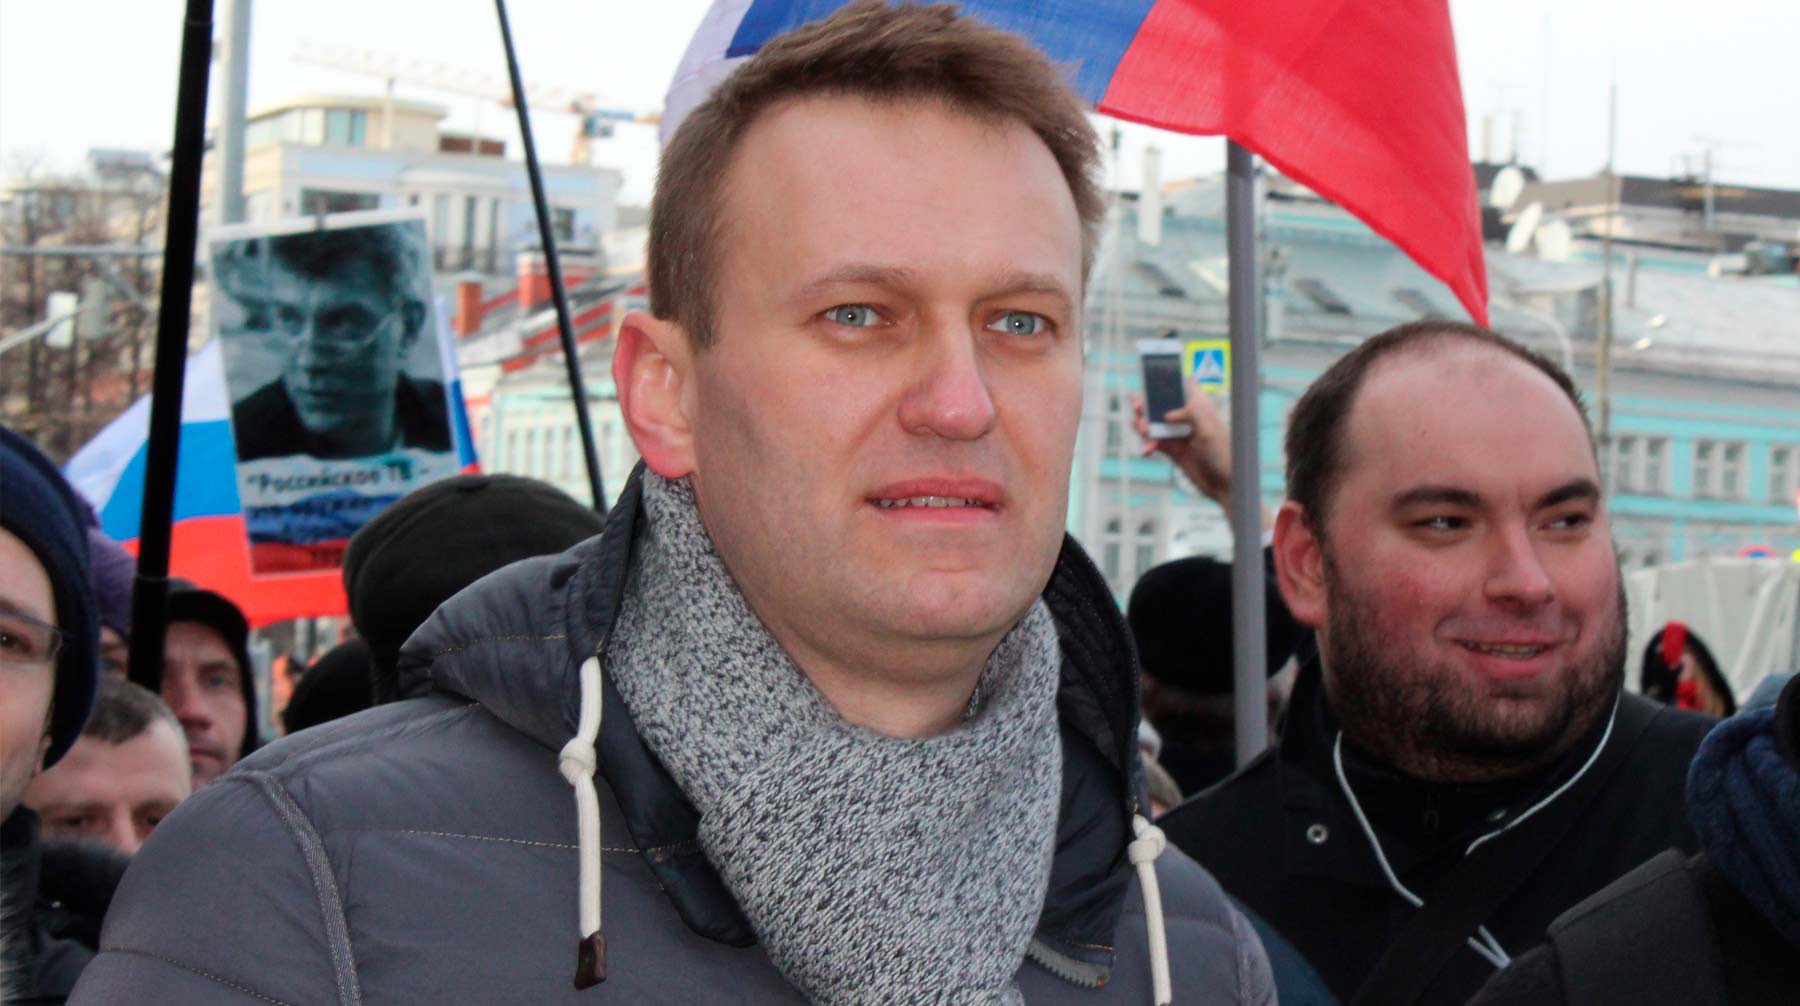 Dailystorm - Омские медики ответили Навальному на сравнение врачей с убийцами